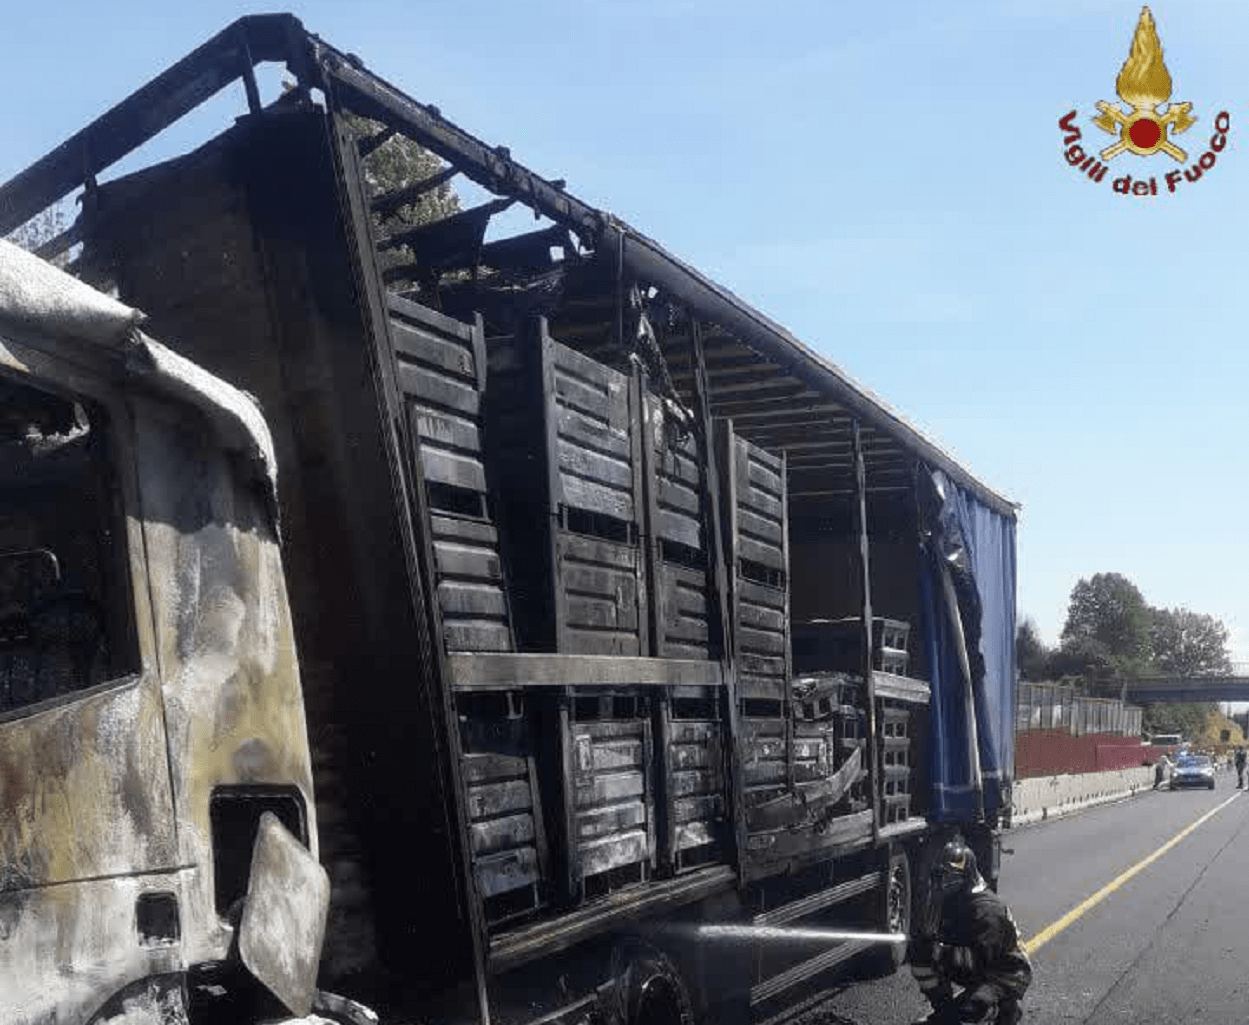 Camion divorato dalle fiamme sull'A1